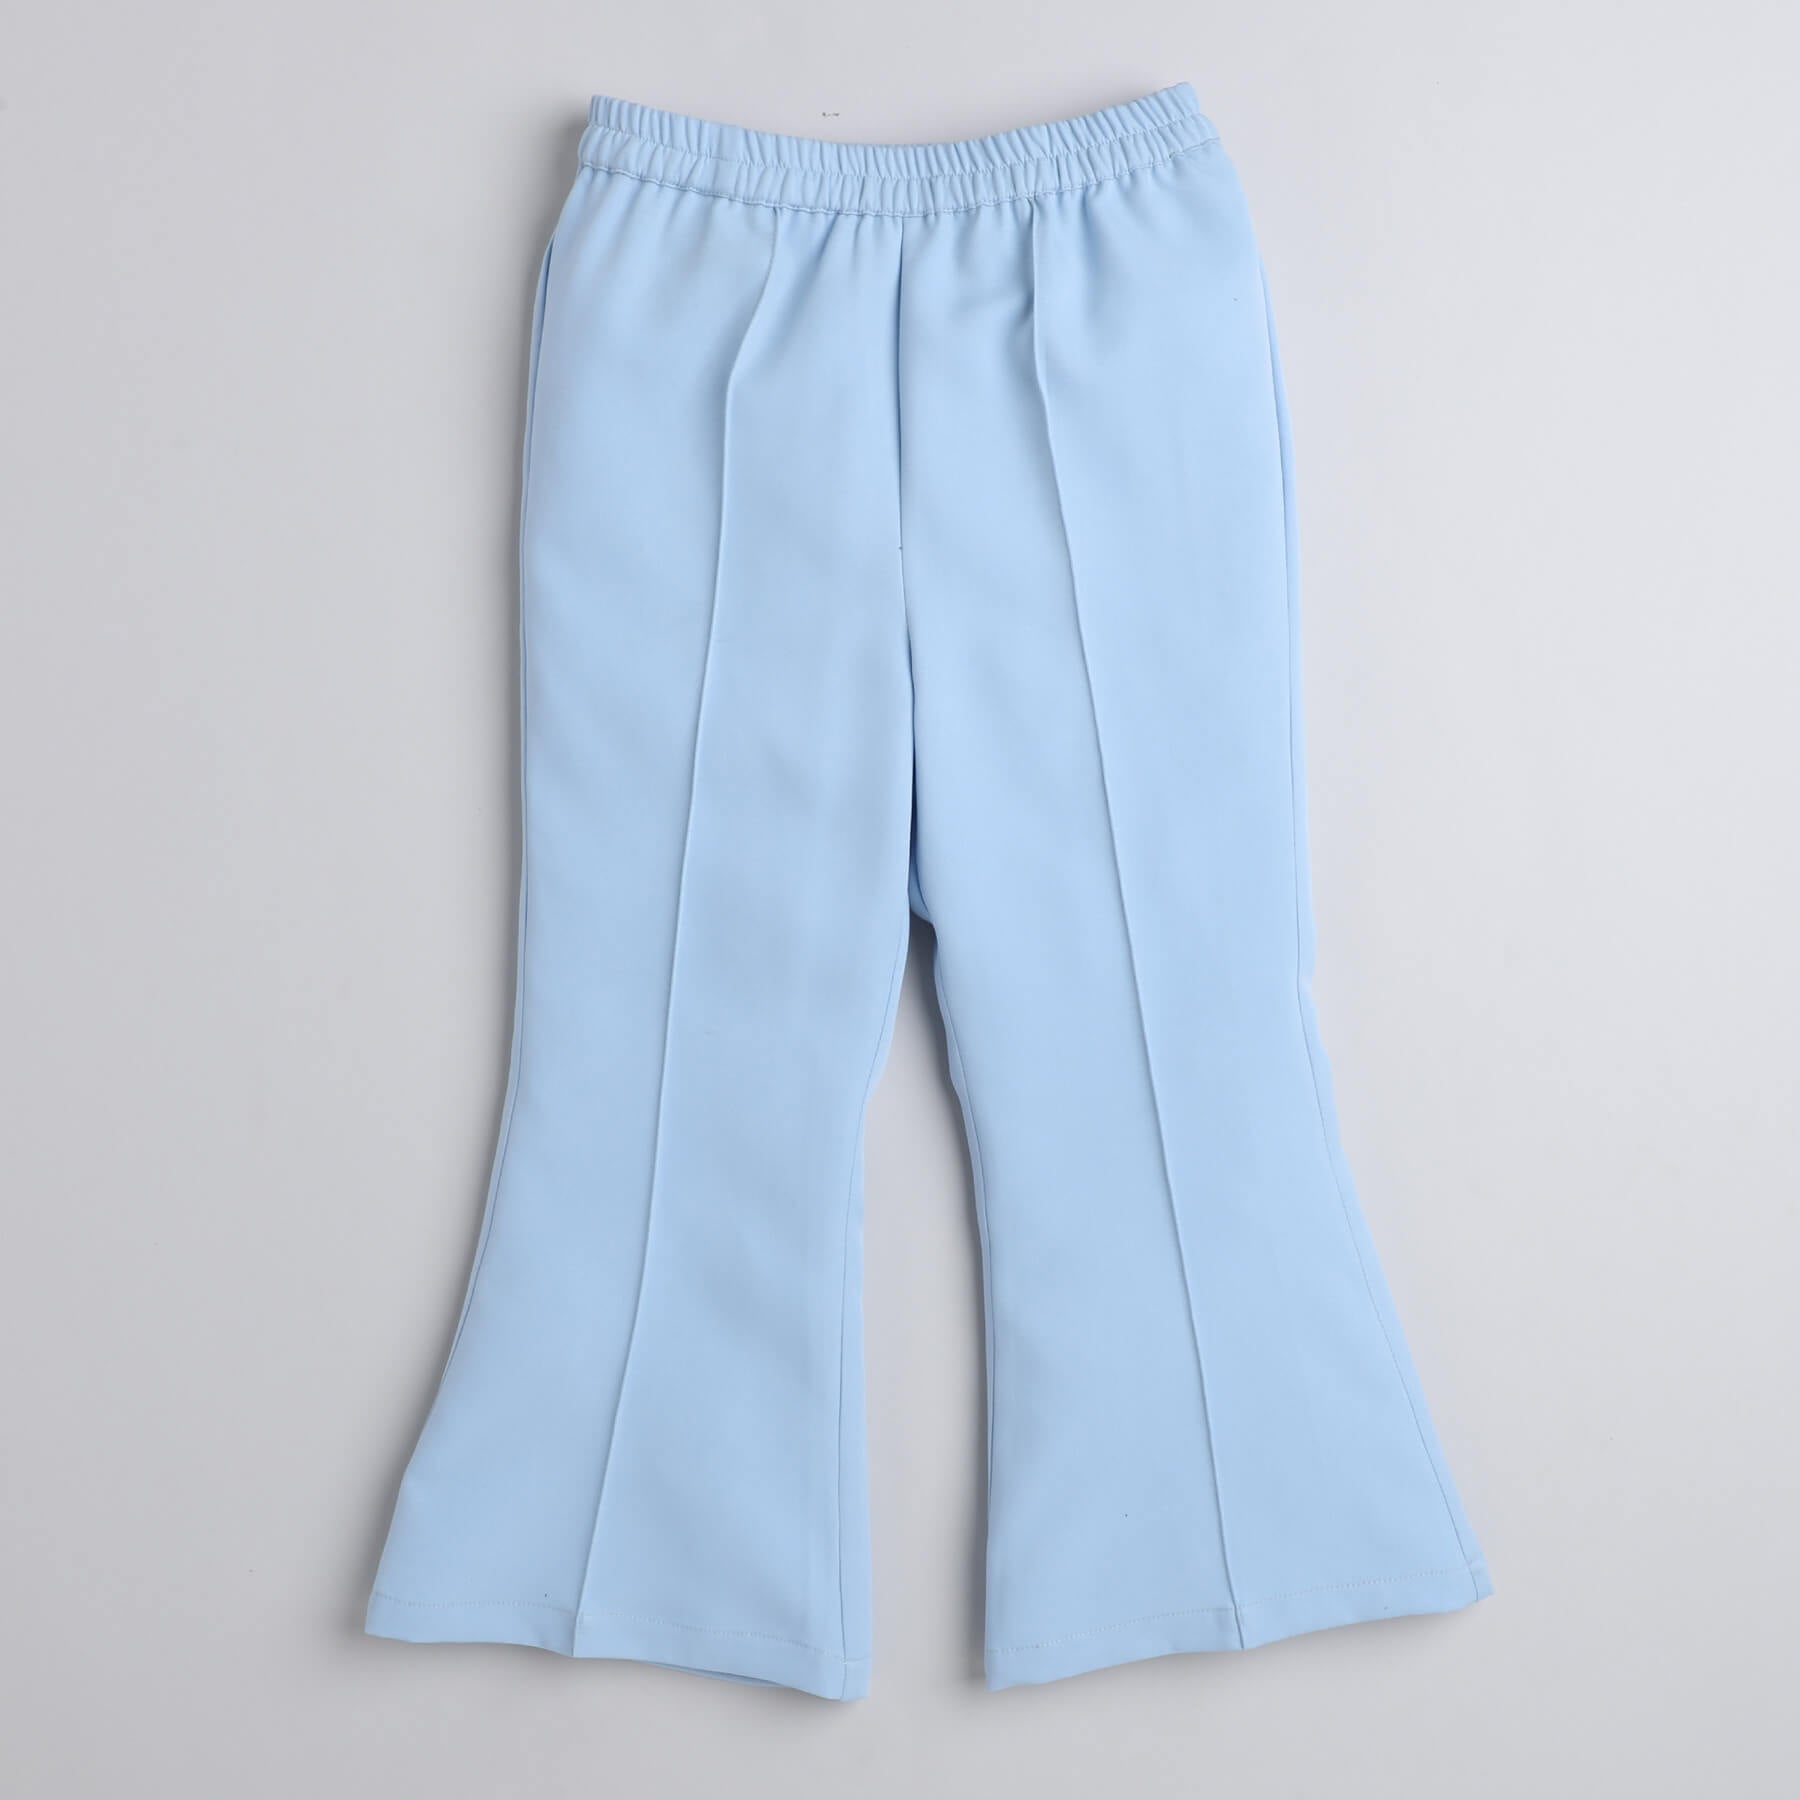 Taffykids ruffle detail crop top and bell bottom pant set-Pink/Blue